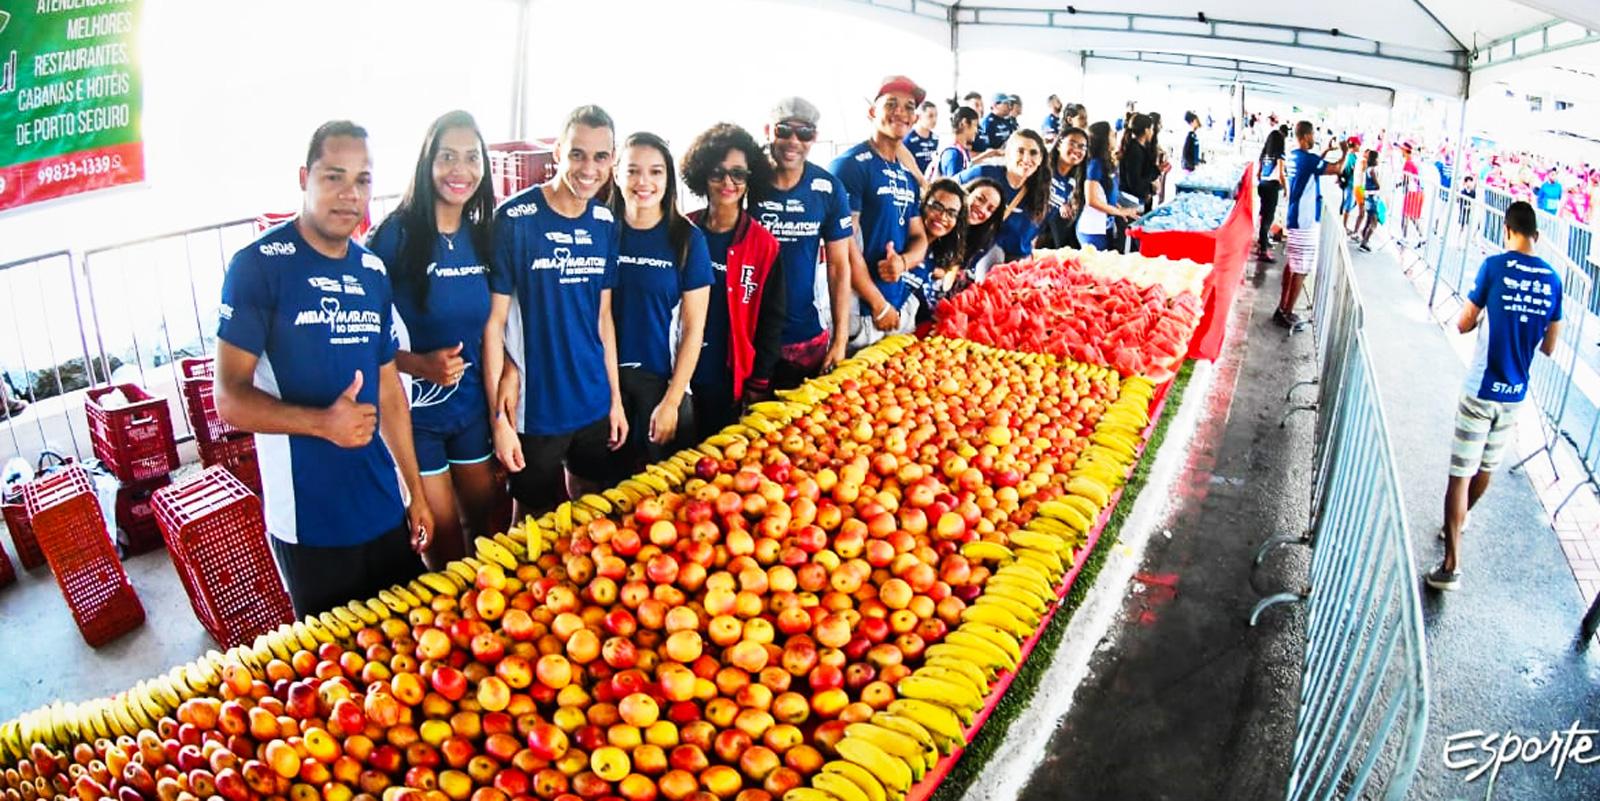 Meia Maratona anuncia apoio para a distribuição de frutas